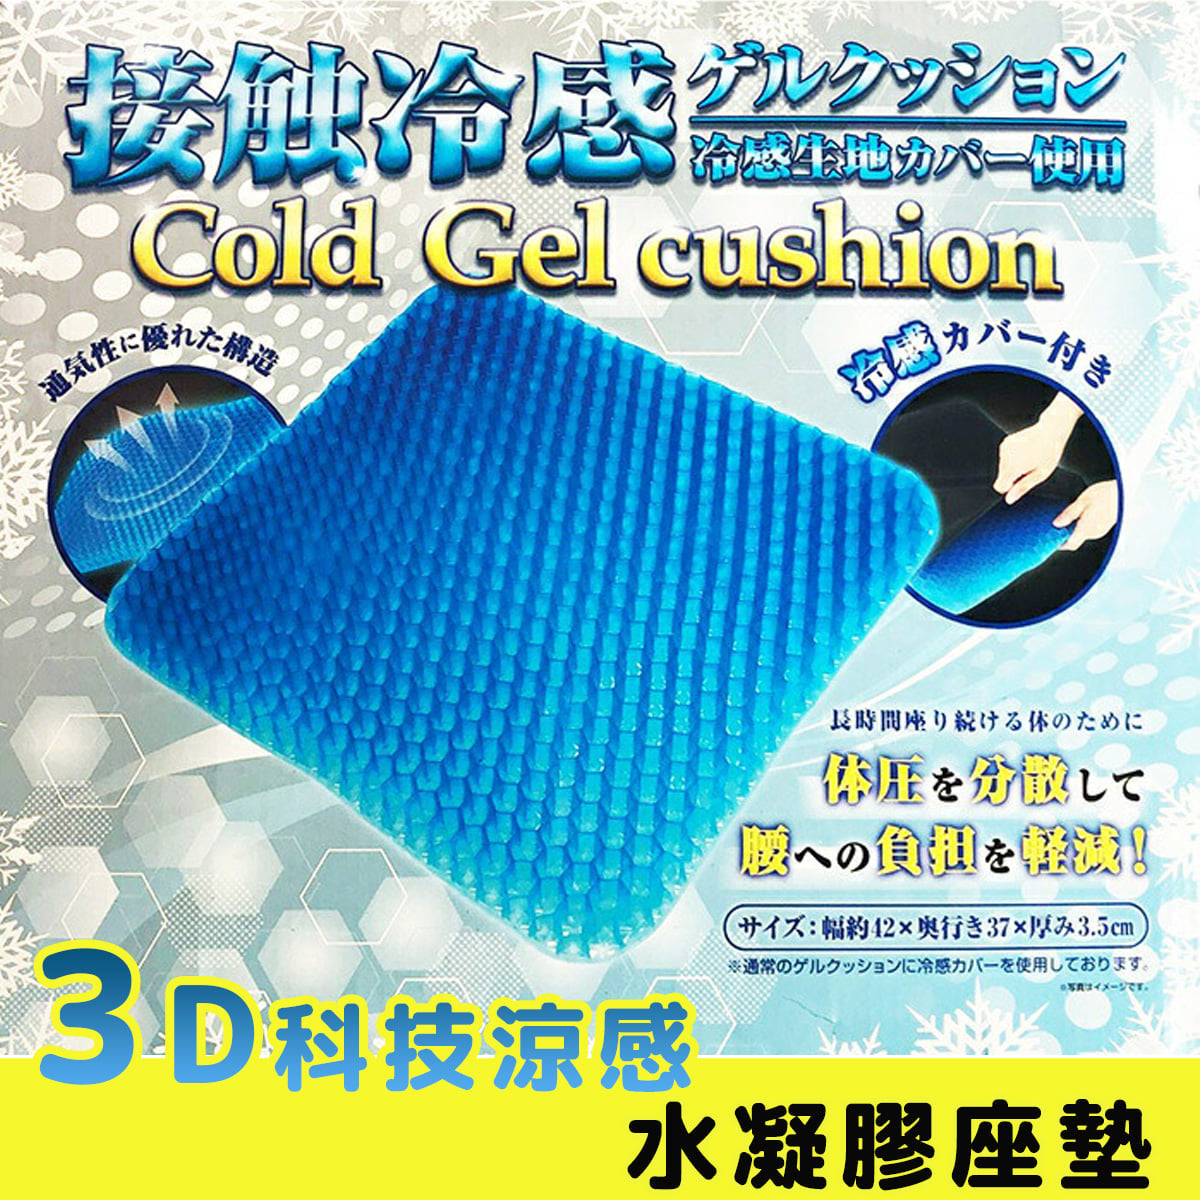 Coin Gel Cushion - Japan 42x37x3.5